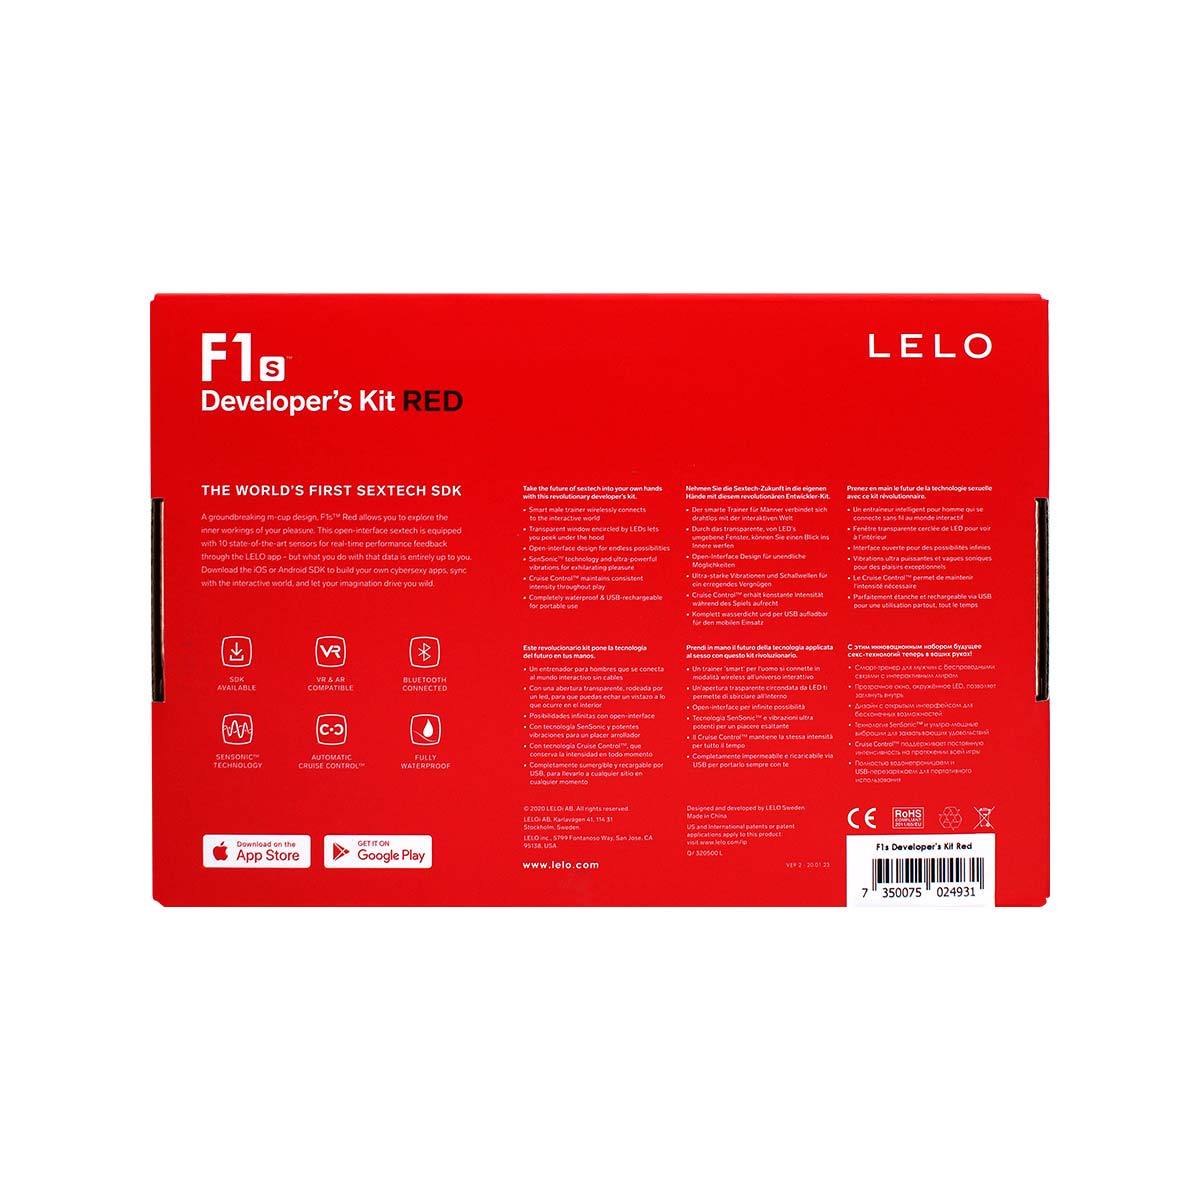 LELO F1s Developer's Kit Red-thumb_3